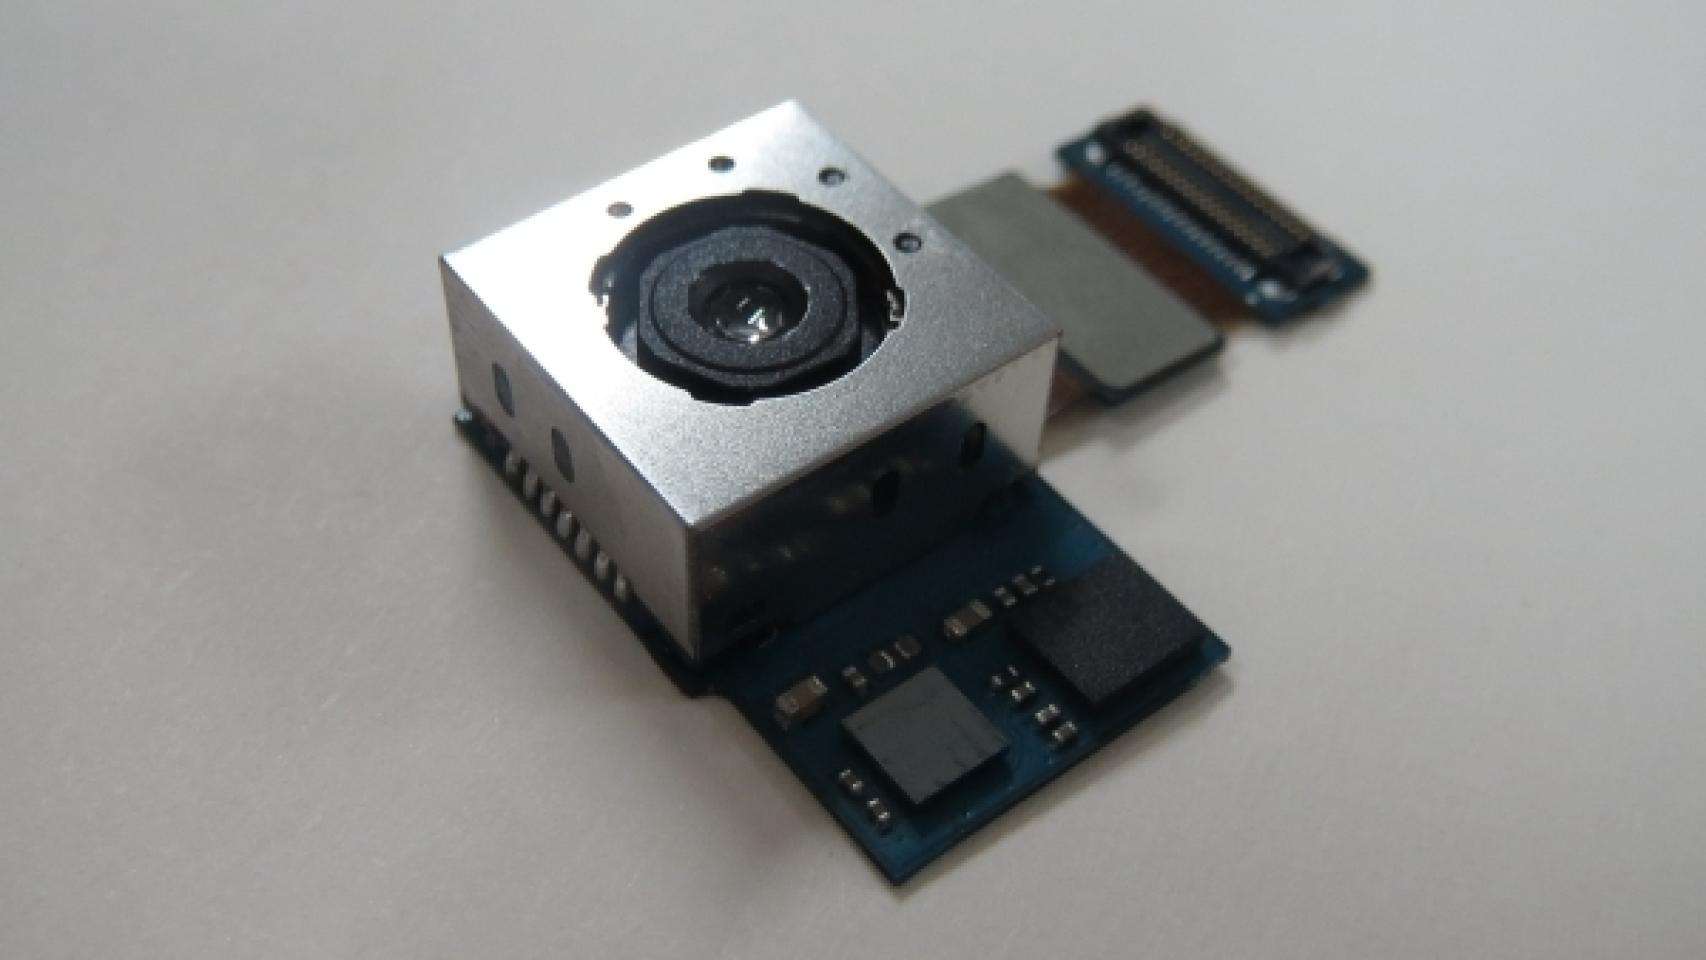 Samsung presenta su propio sensor fotográfico de 13MP con estabilización de imagen y más luminoso